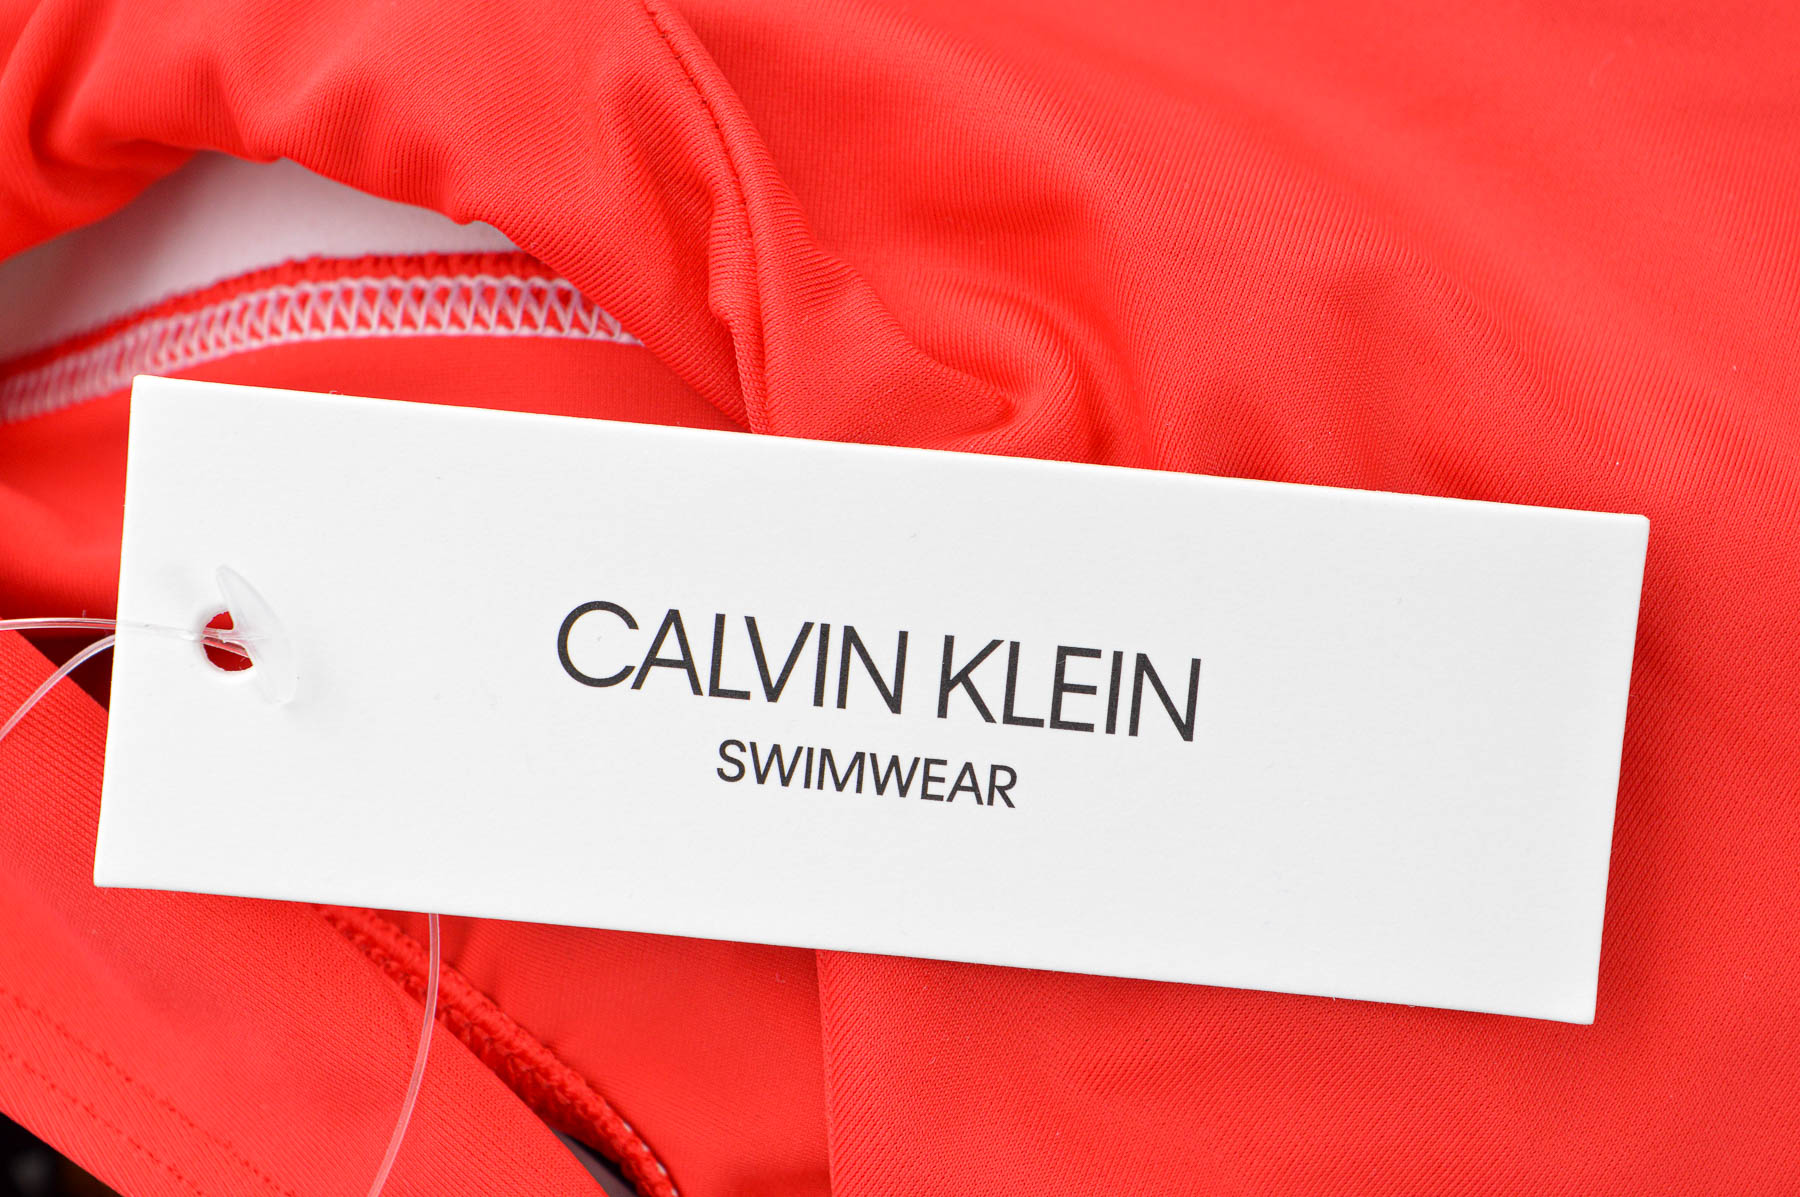 Women's swimsuit bikini top - CALVIN KLEIN SWIMWEAR - 2